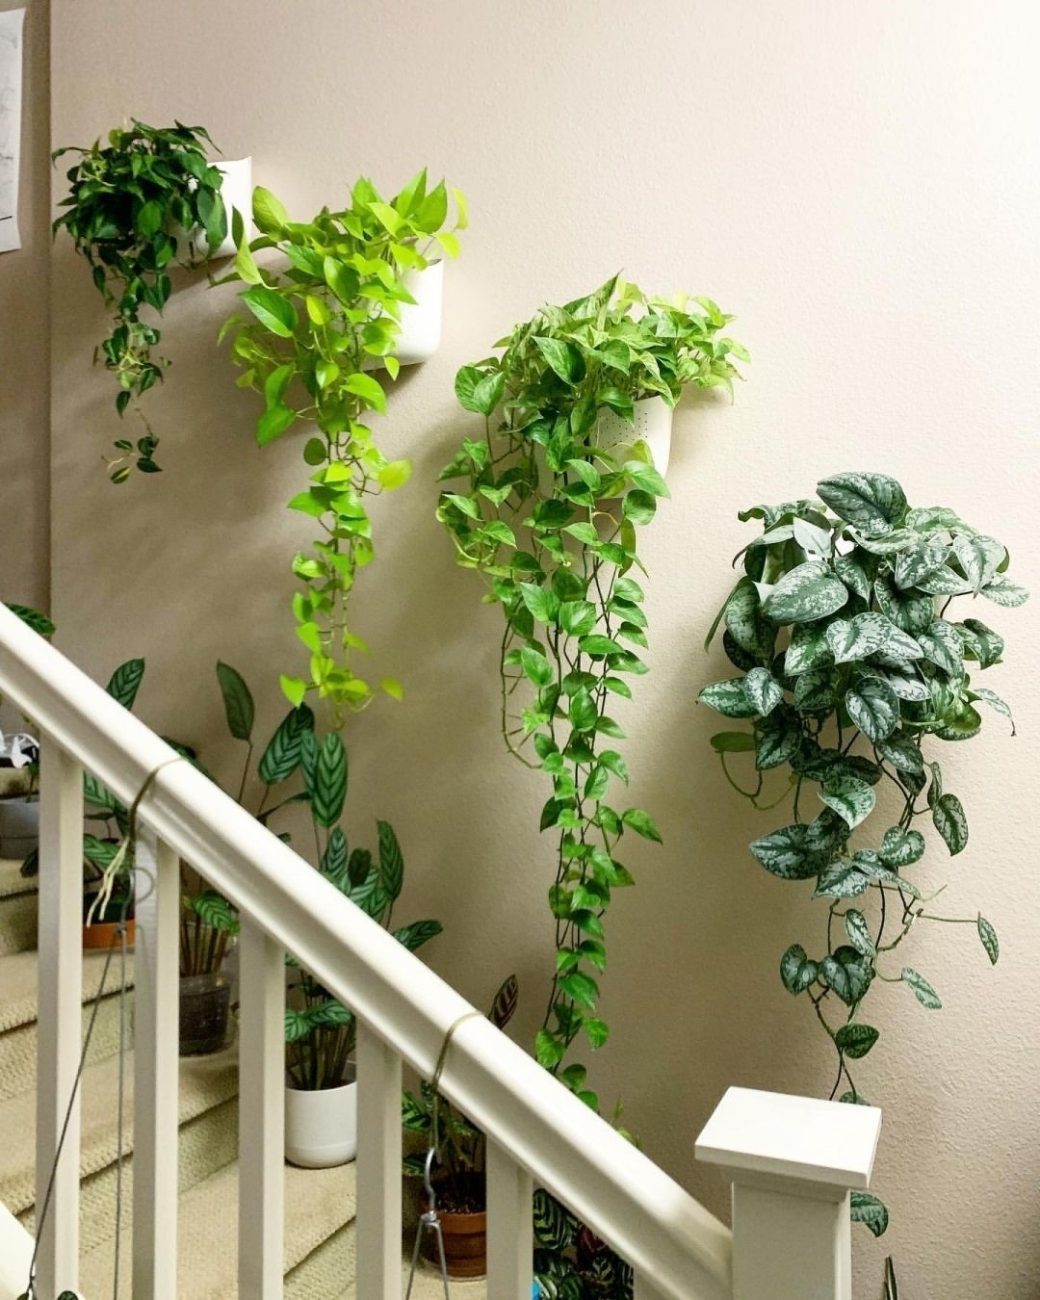 استفاده از فضای پله برای چیدمان گیاهان